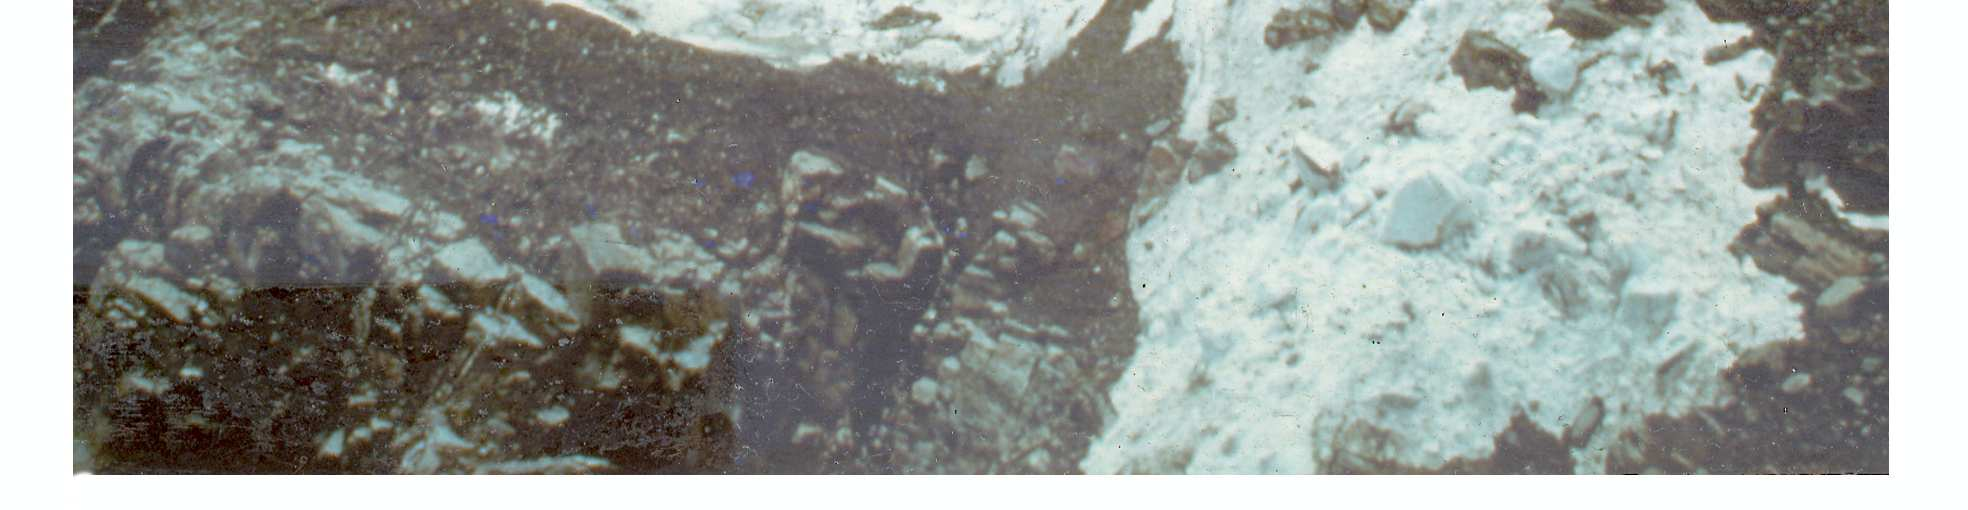 Questo è il meccanismo ipotizzato per il crollo del Ghiacciaio Superiore del Coolidge sul Monviso, avvenuto la notte del 6 luglio 1989 (Dutto et al.